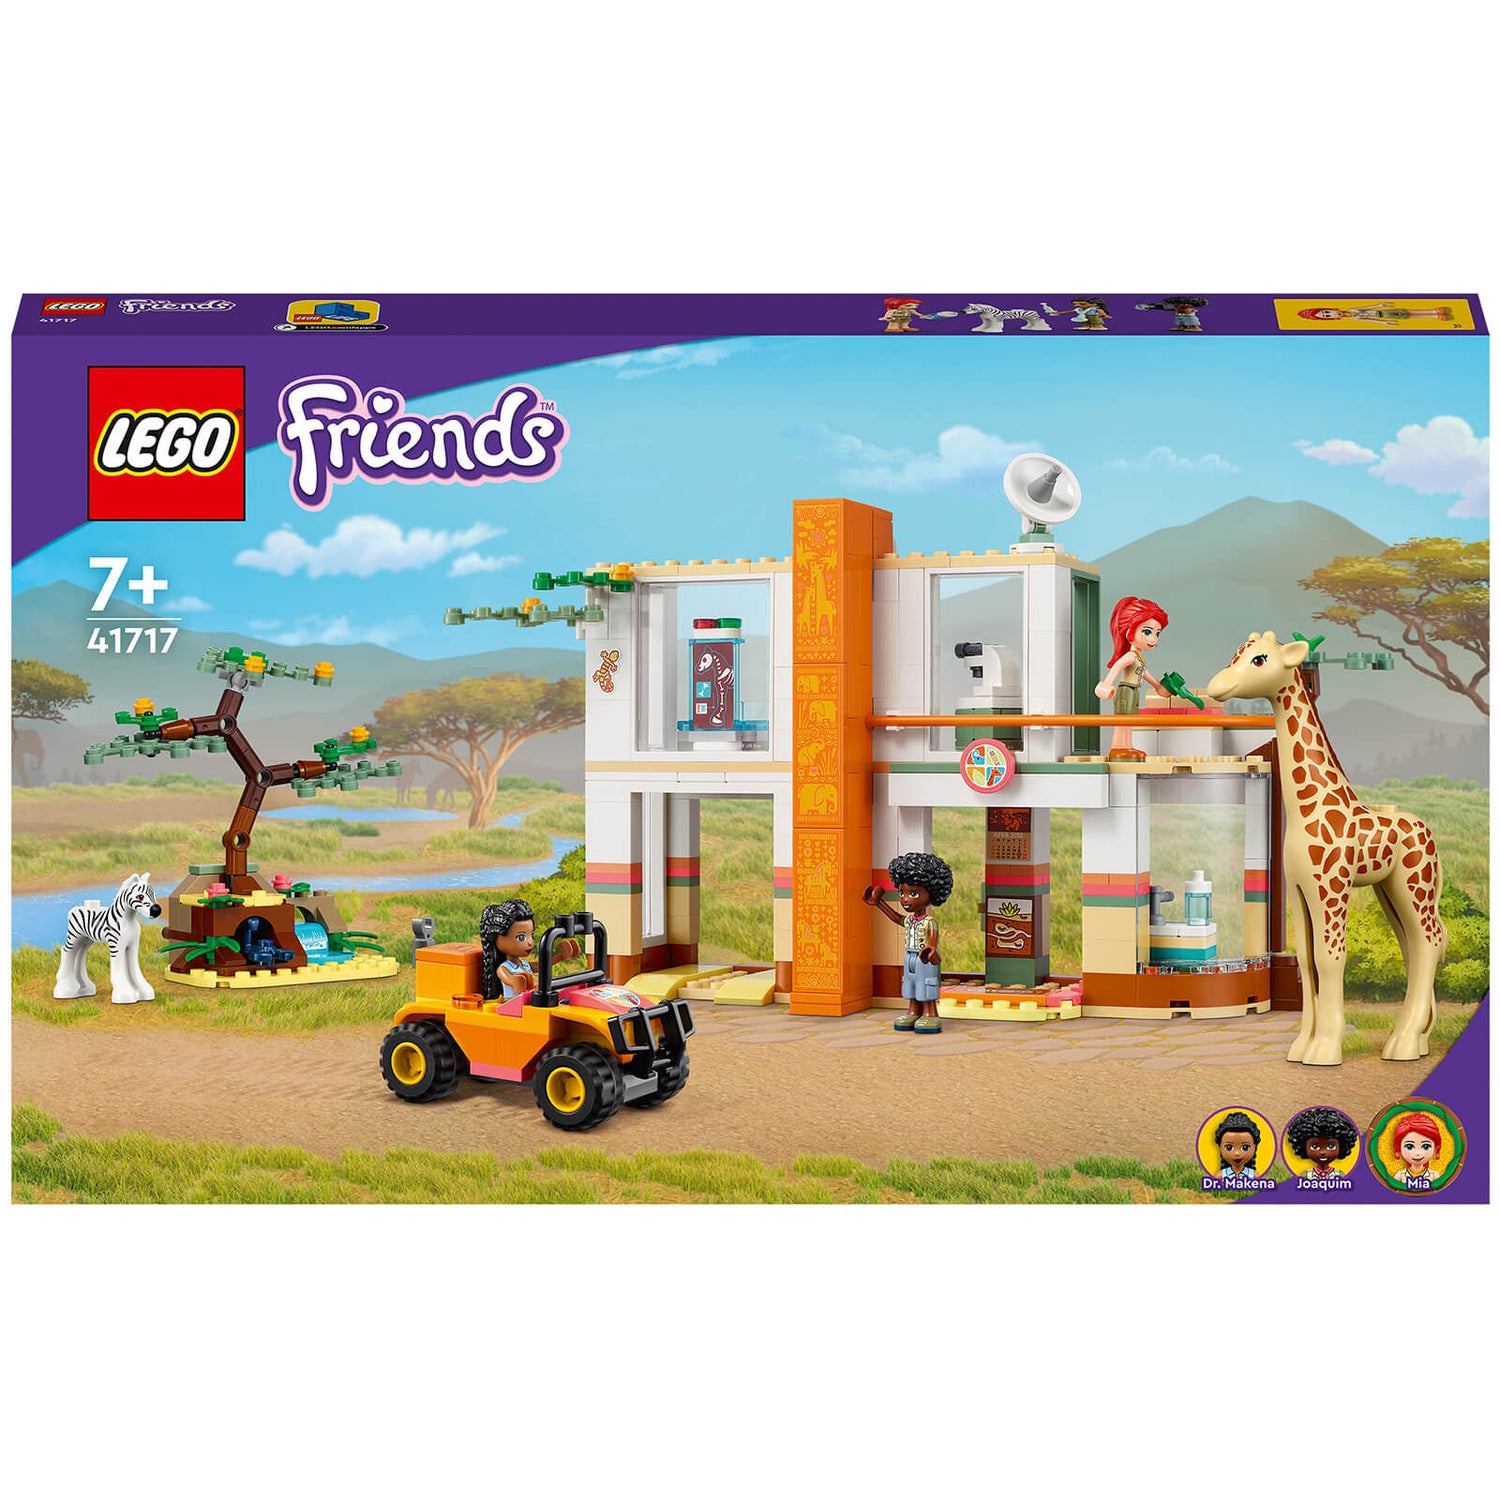 LEGO Friends: Mia's Wildlife Rescue Animal Toy Play Set (41717)